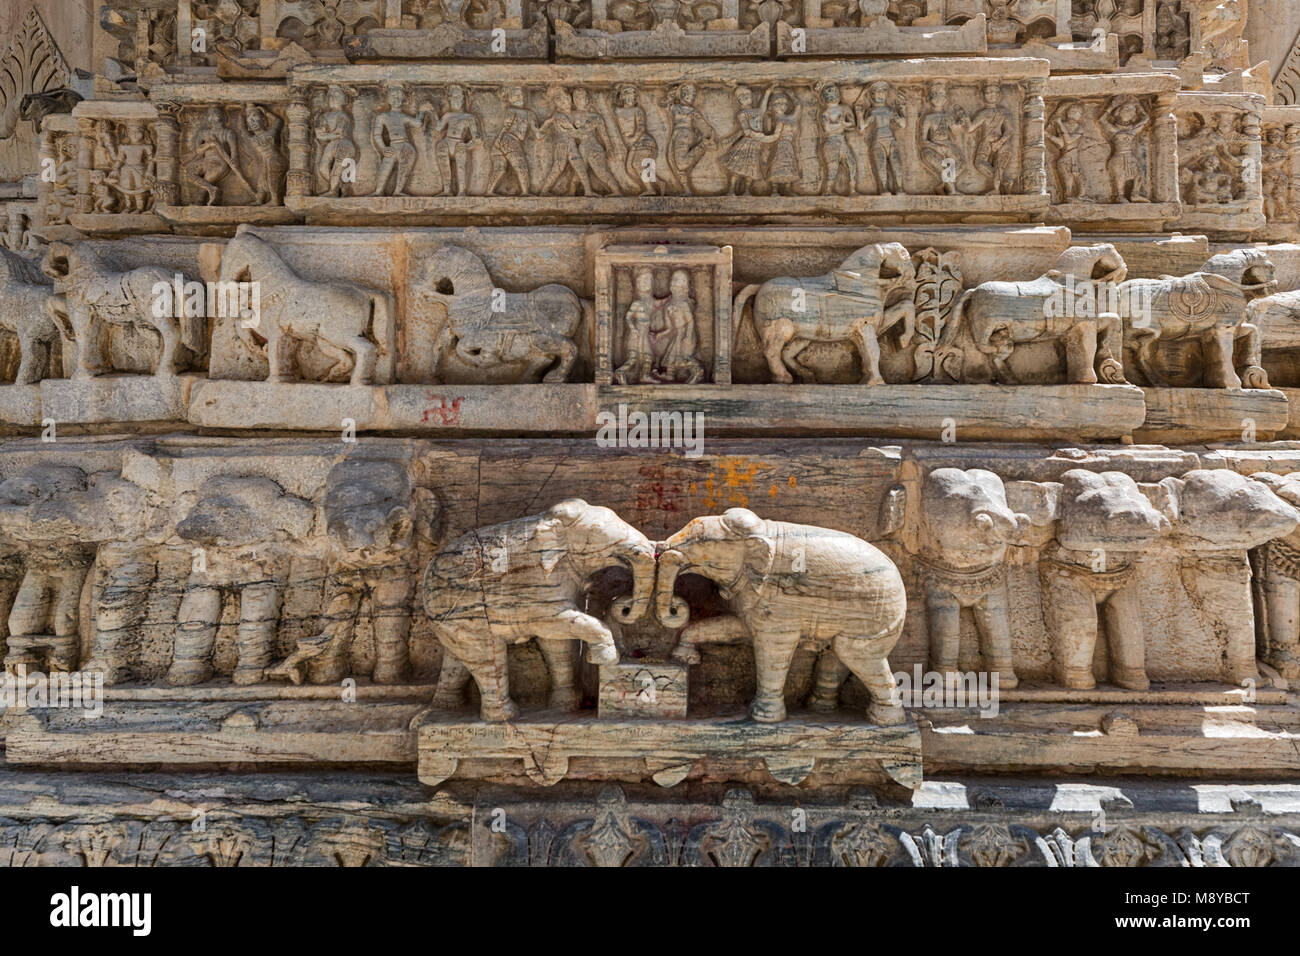 Jagdish Temple - Udaipur Stock Photo